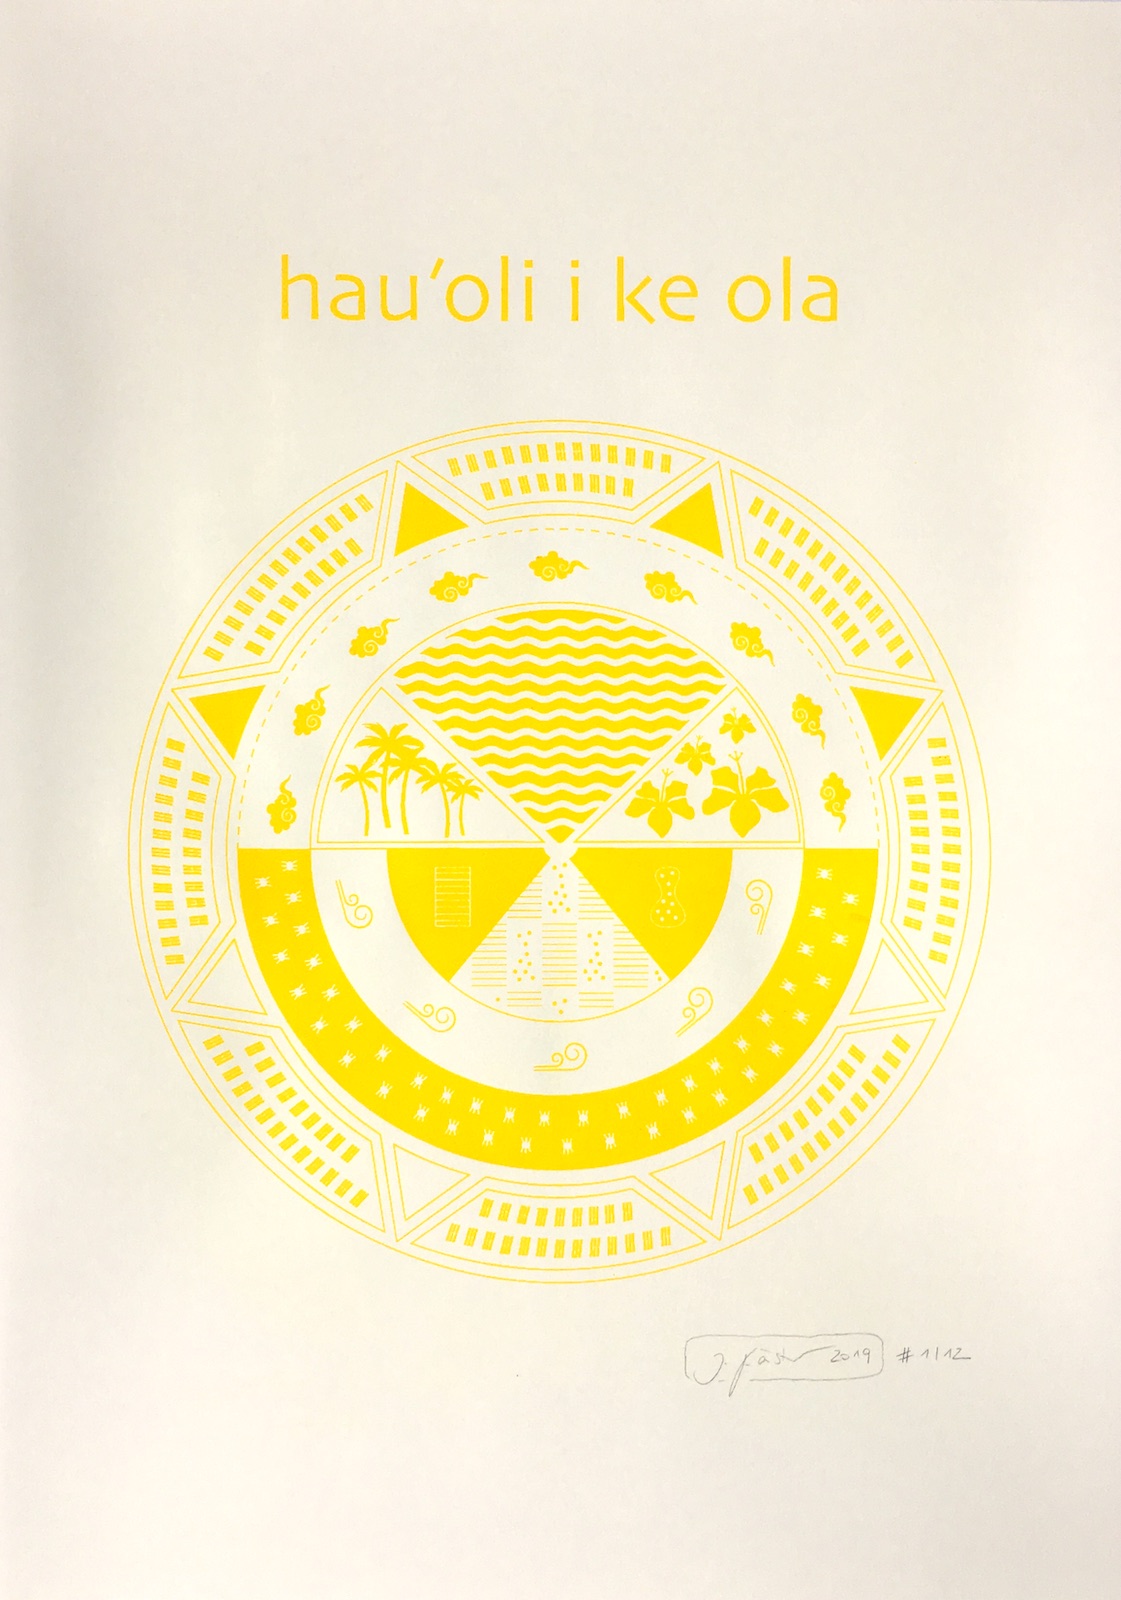 hau'oli ke ola - Hawai'ian Hula